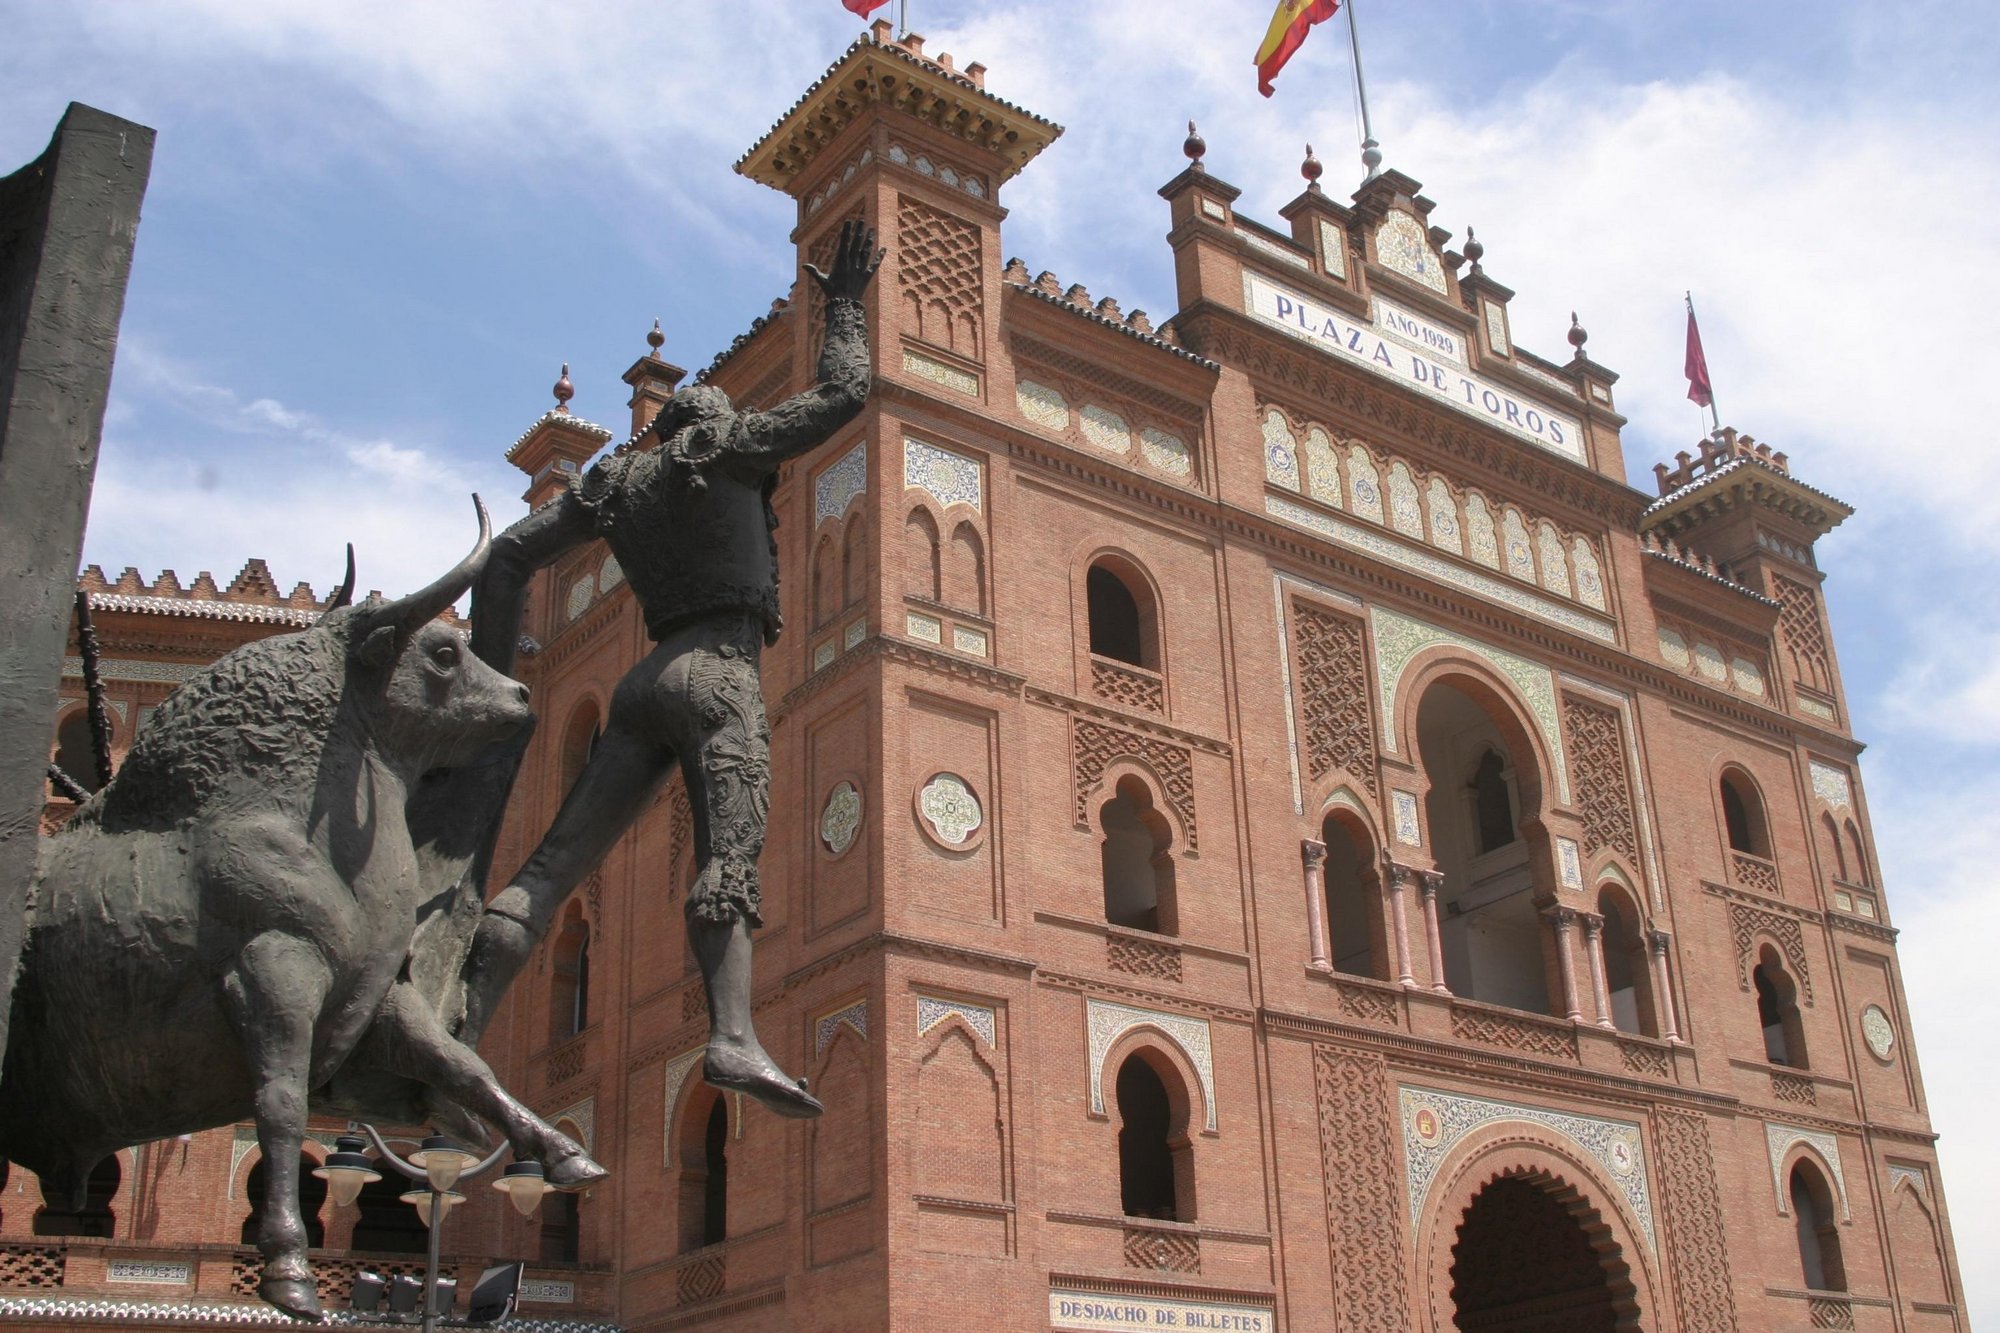 La plaza de toros de Las Ventas incorporará la posibilidad de sacar tickets on-line para sus visitas turísticas